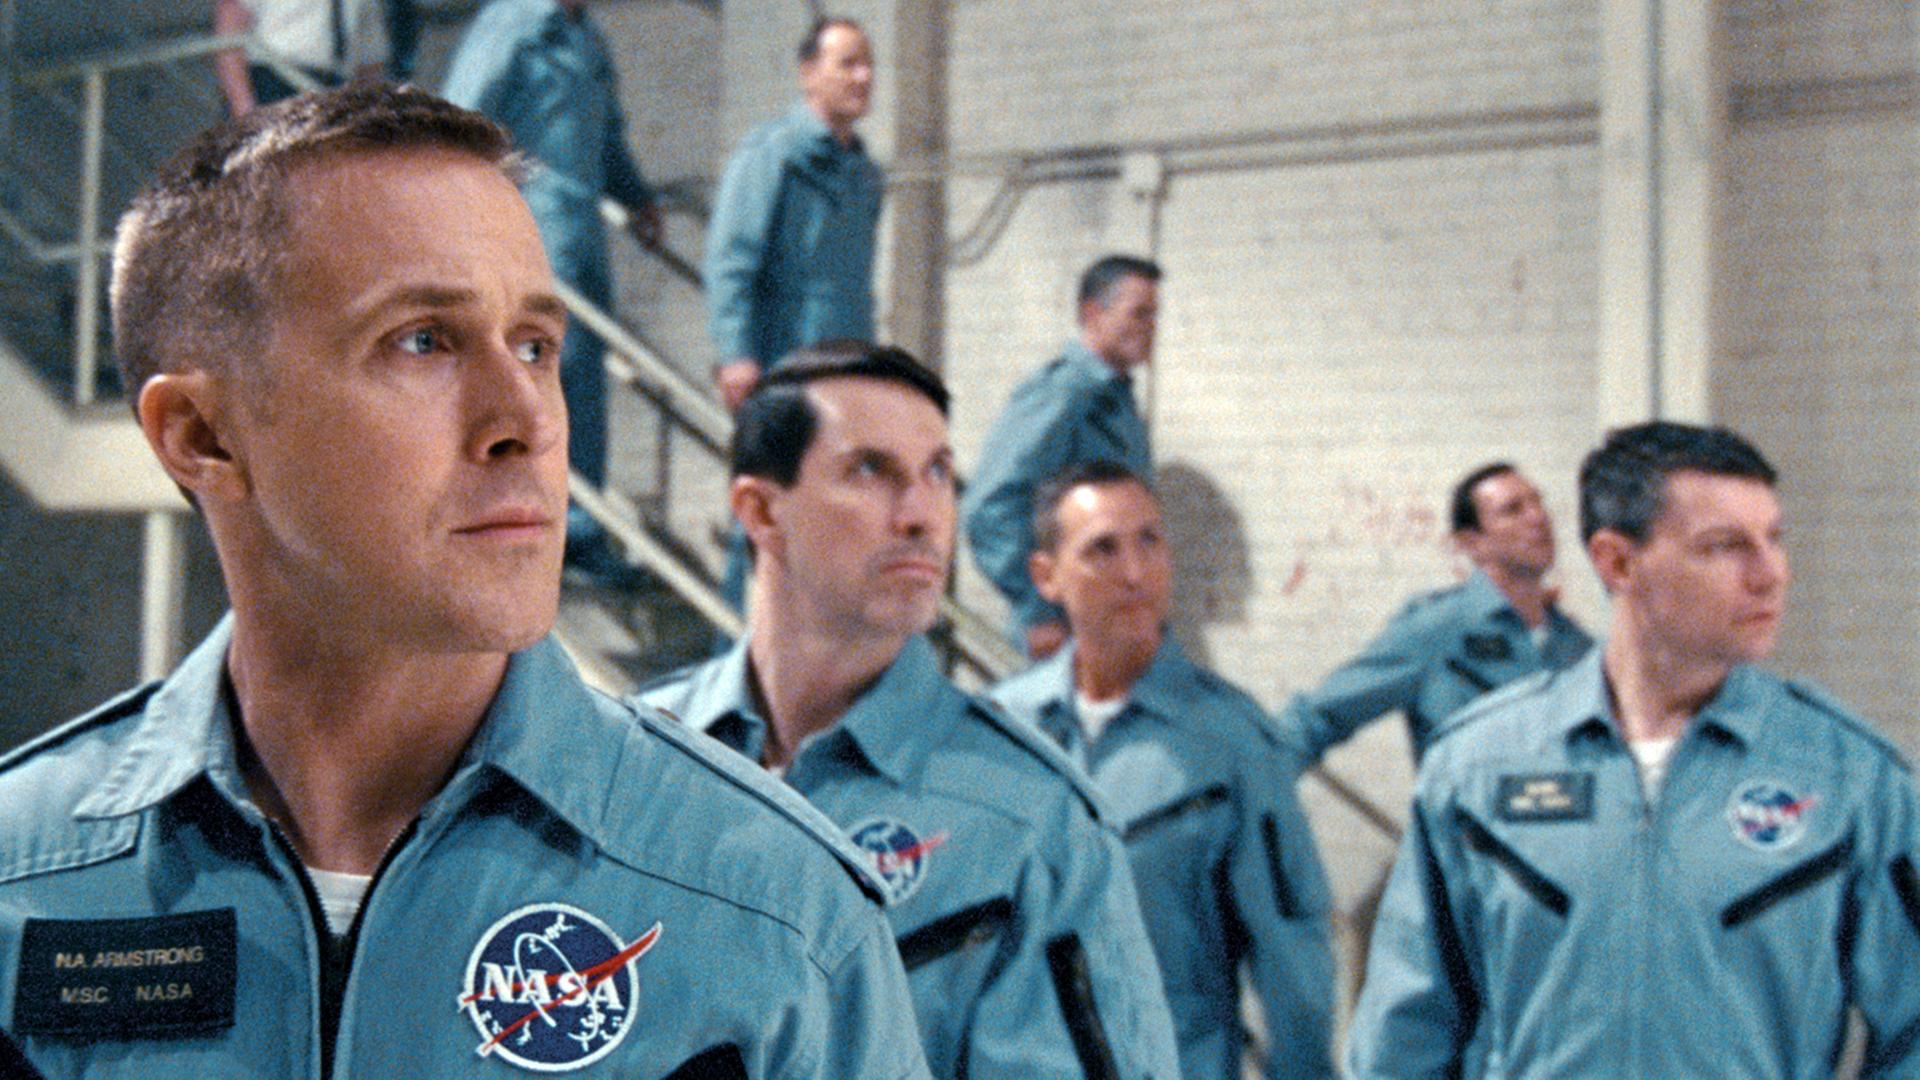 Ein Filmstill aus "First Man" mit Ryan Gosling alias Neil Armstrong